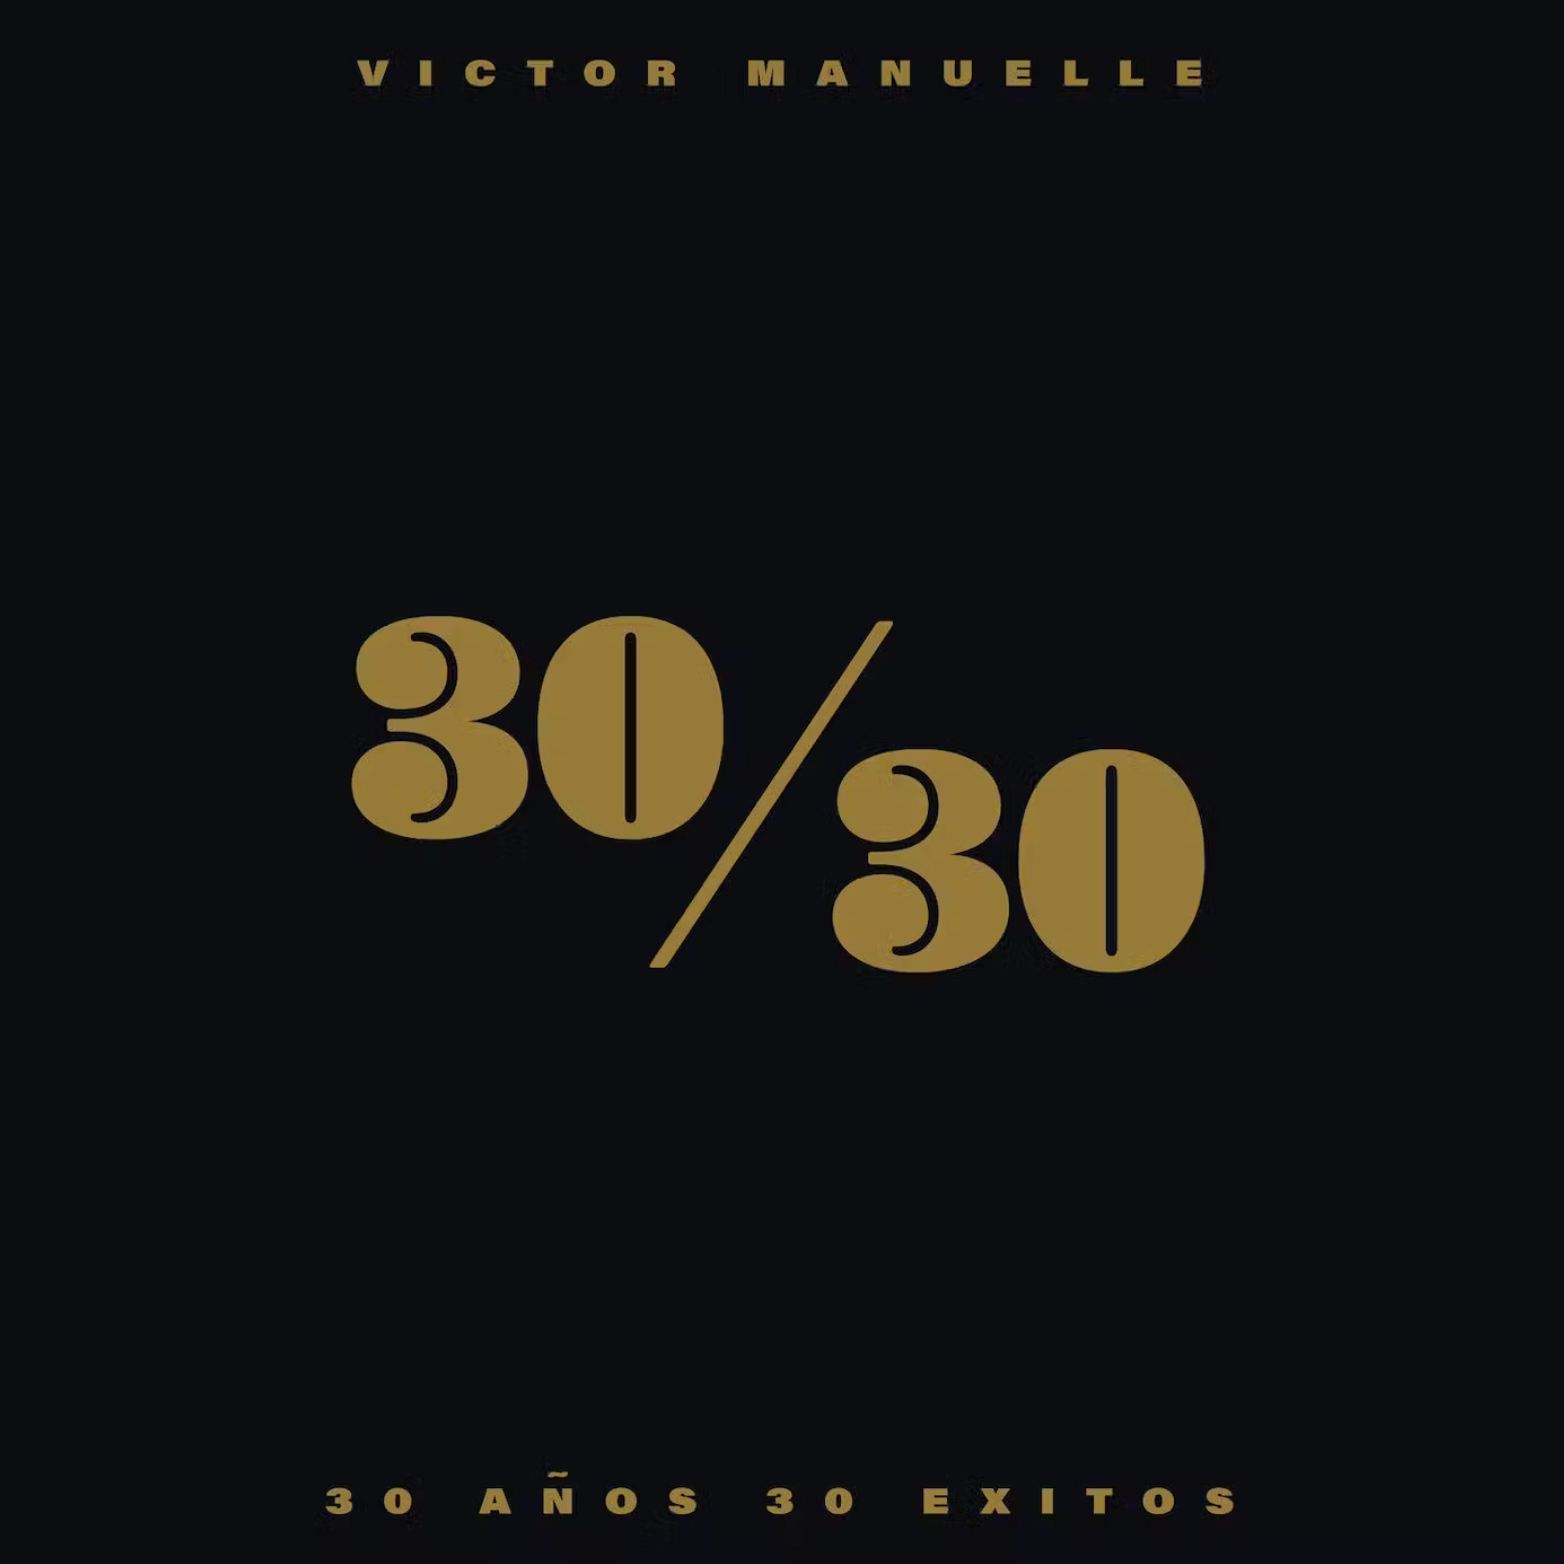 Victor Manuelle - 30 / 30